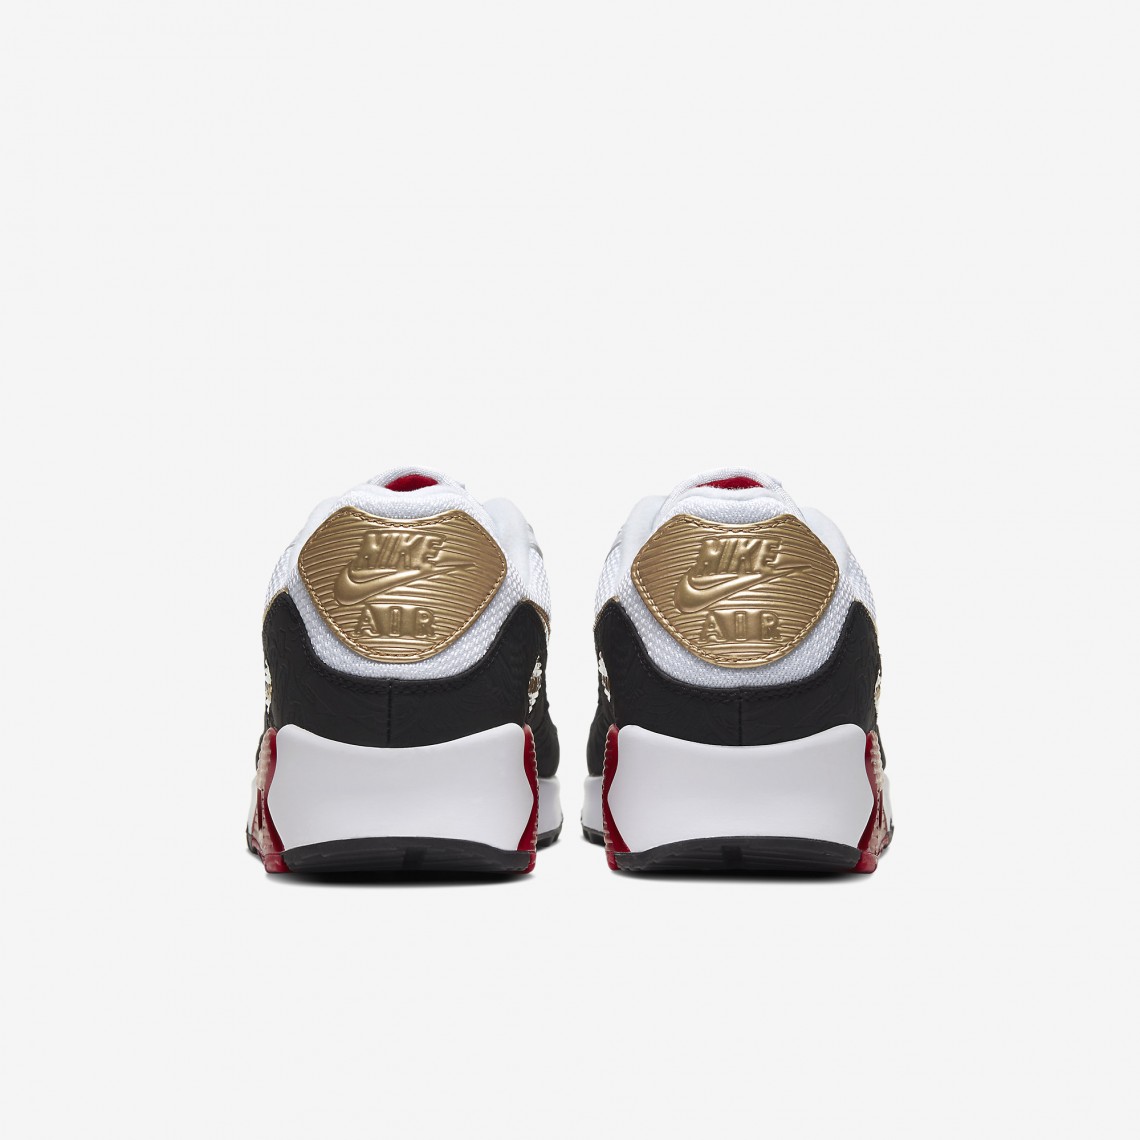 Nike Air Max 90 vit röd guld 2020 kinesiska nyårsutgåvan herr- och damskor CU3005-171